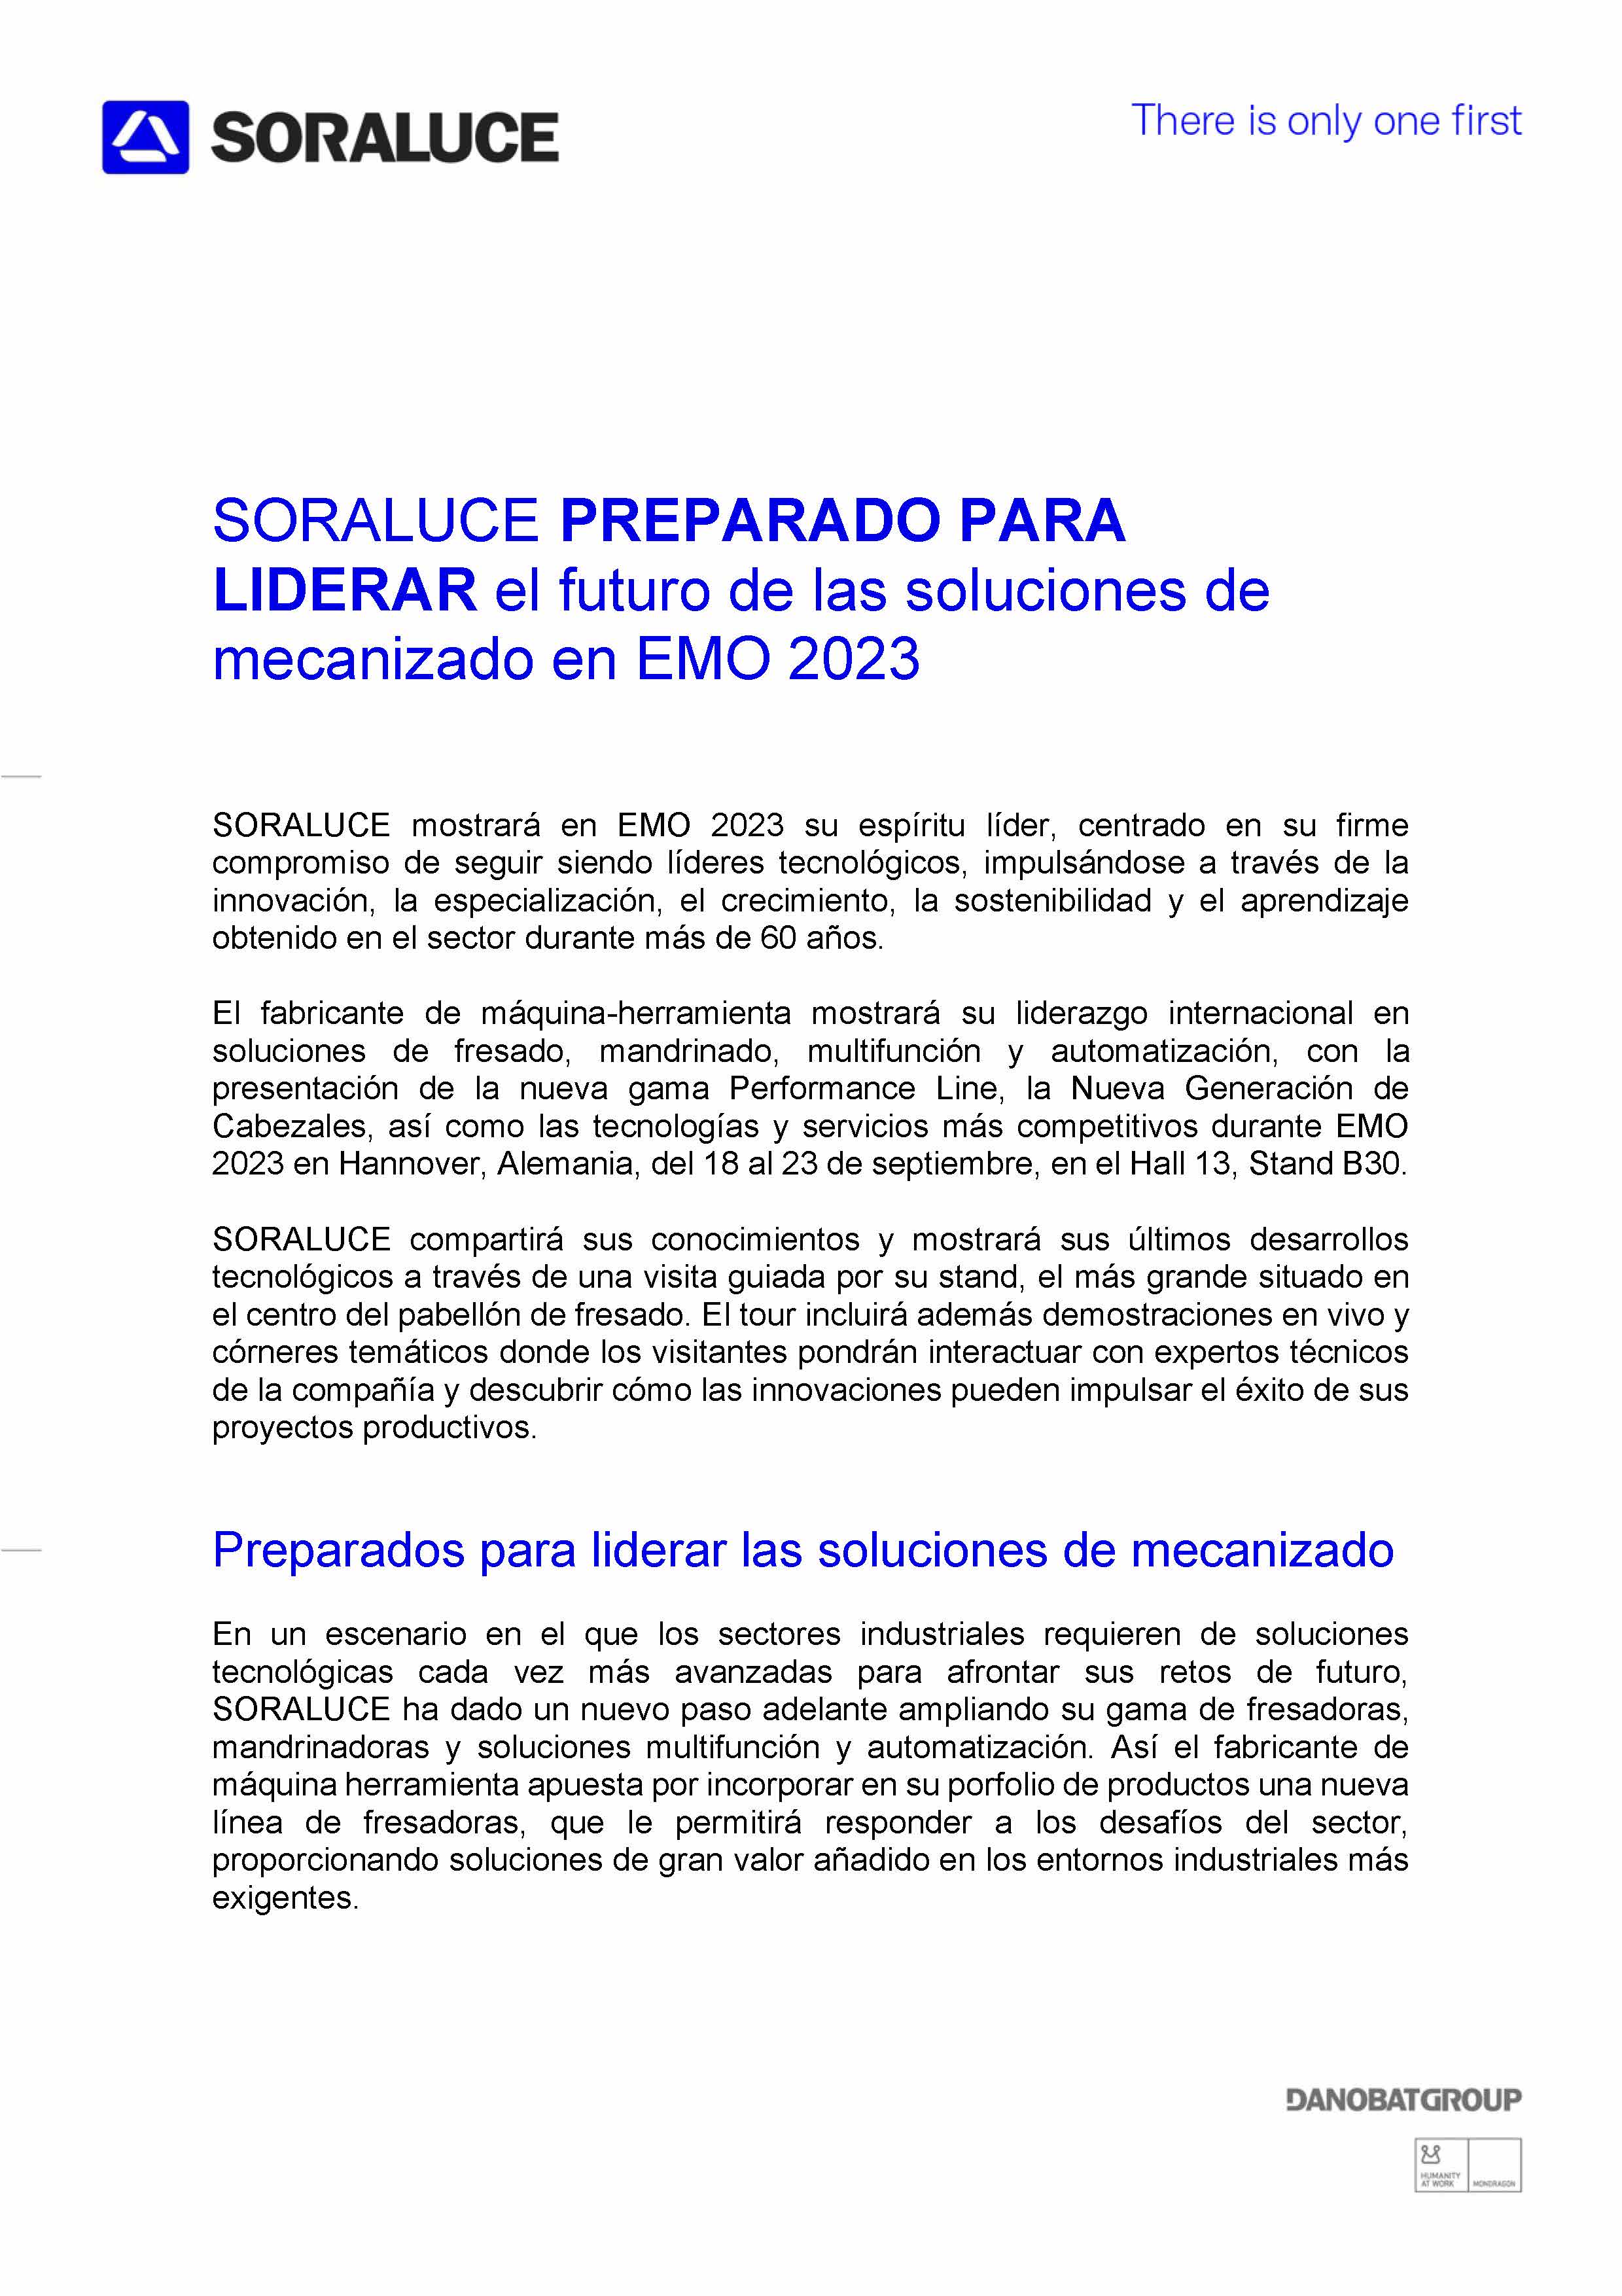 SORALUCE EN LA EMO 2023 NOTA DE PRENSA (CASTELLANO)